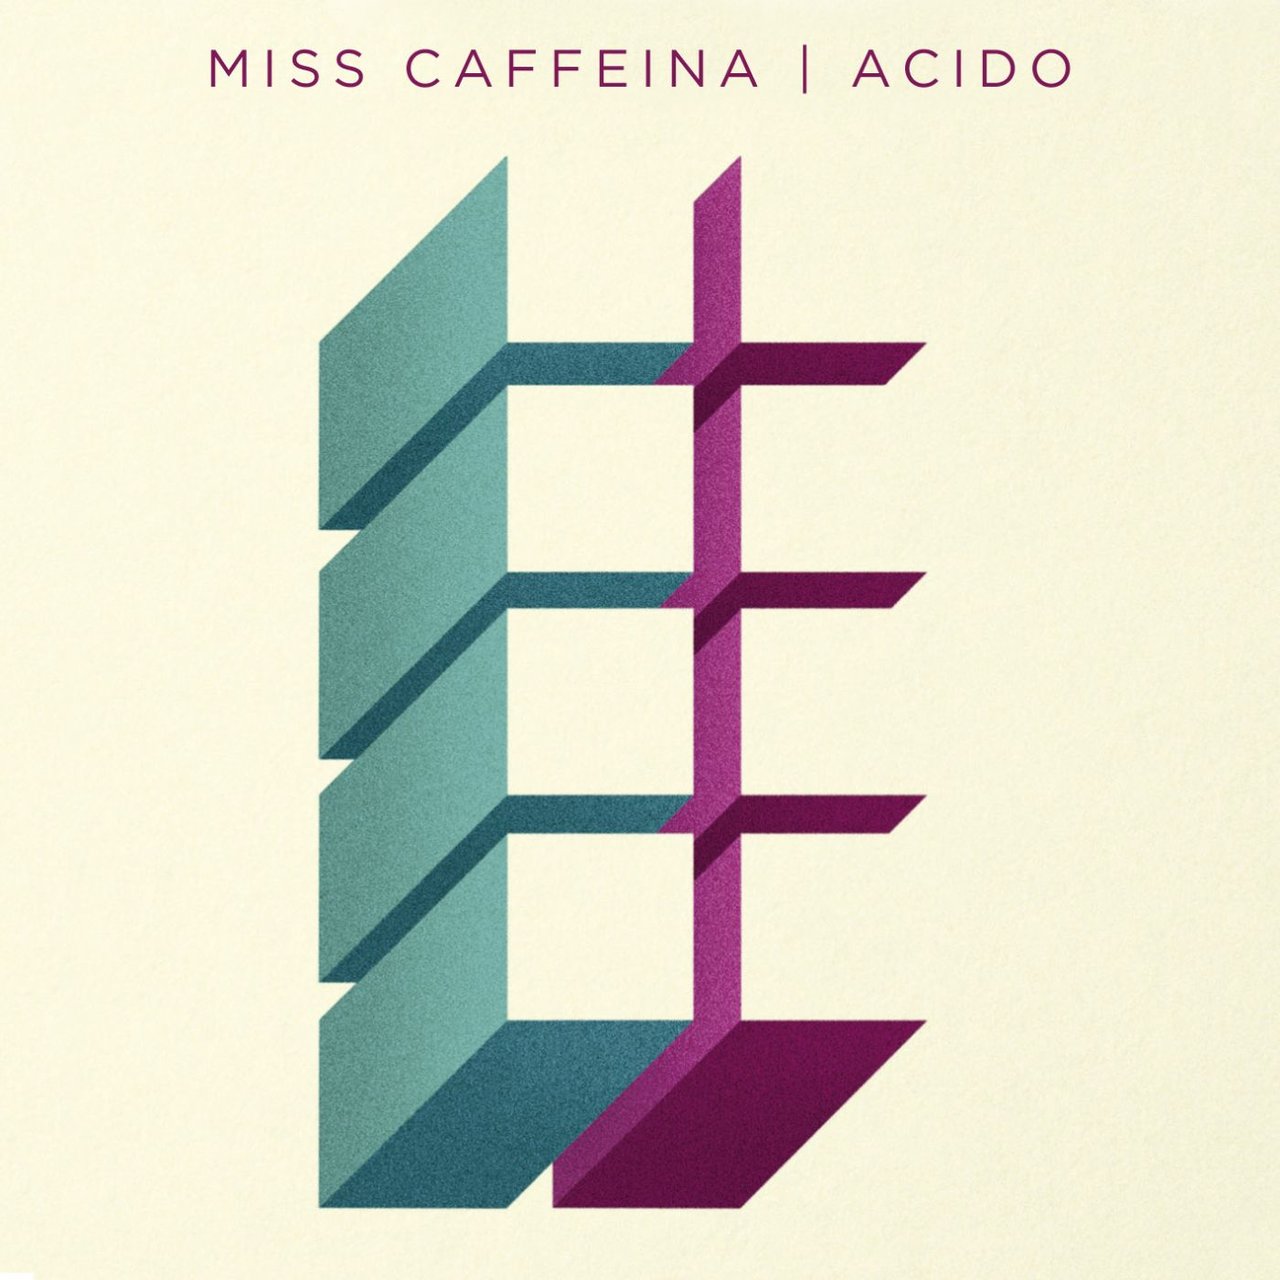 Miss Caffeina — Ácido cover artwork